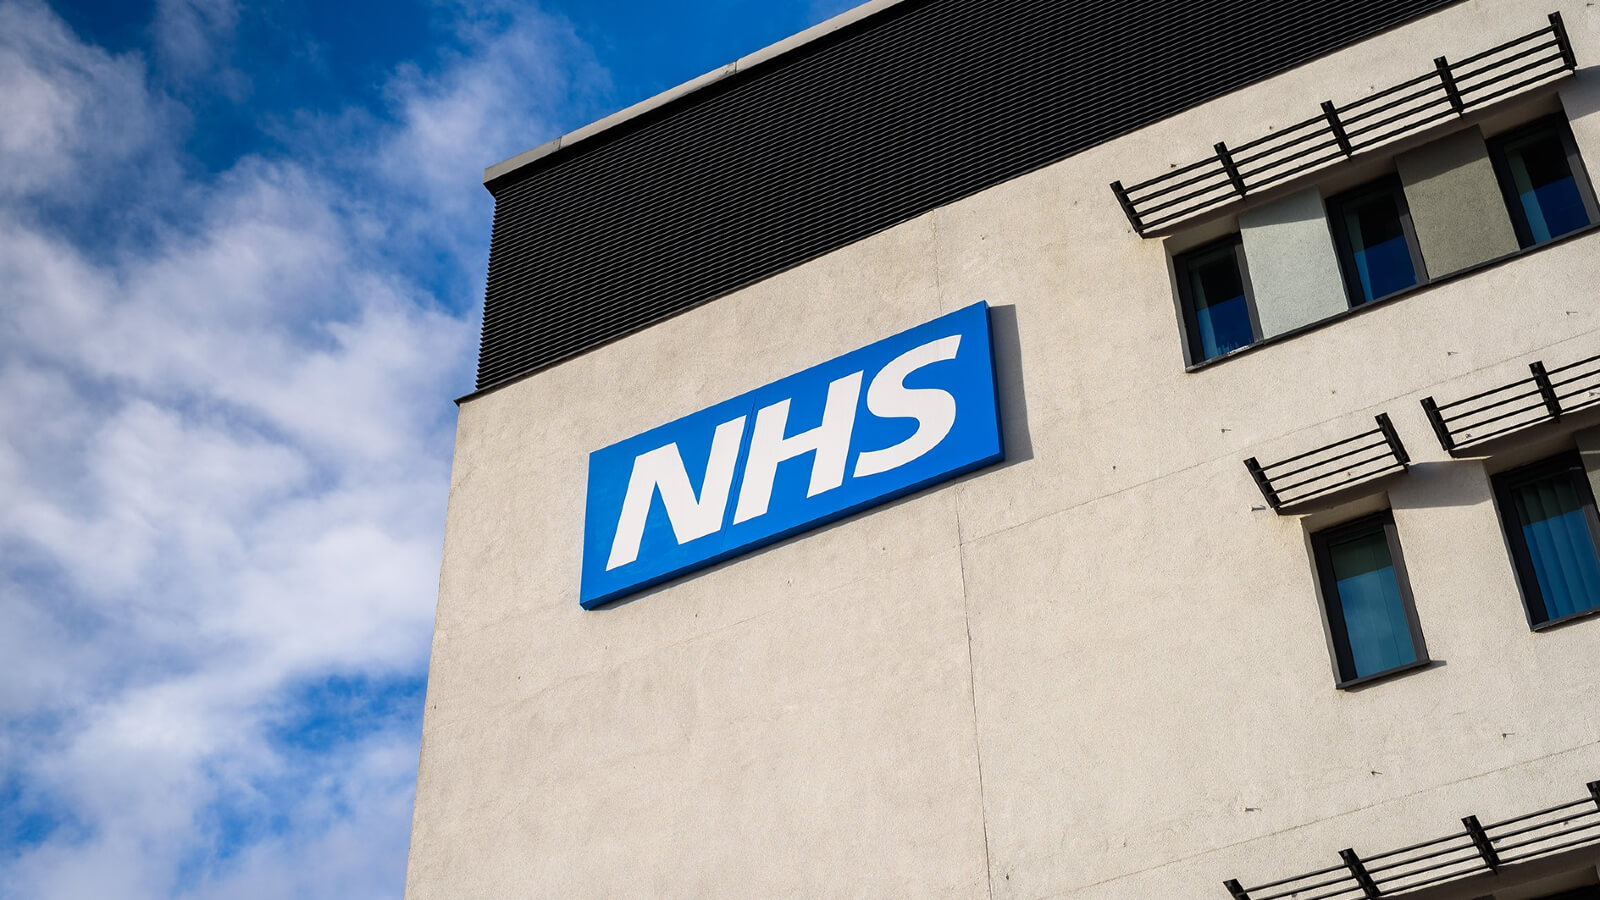 NHS - Il sistema sanitario pubblico britannico ha dato il suo stop ai farmaci bloccanti della pubertà 